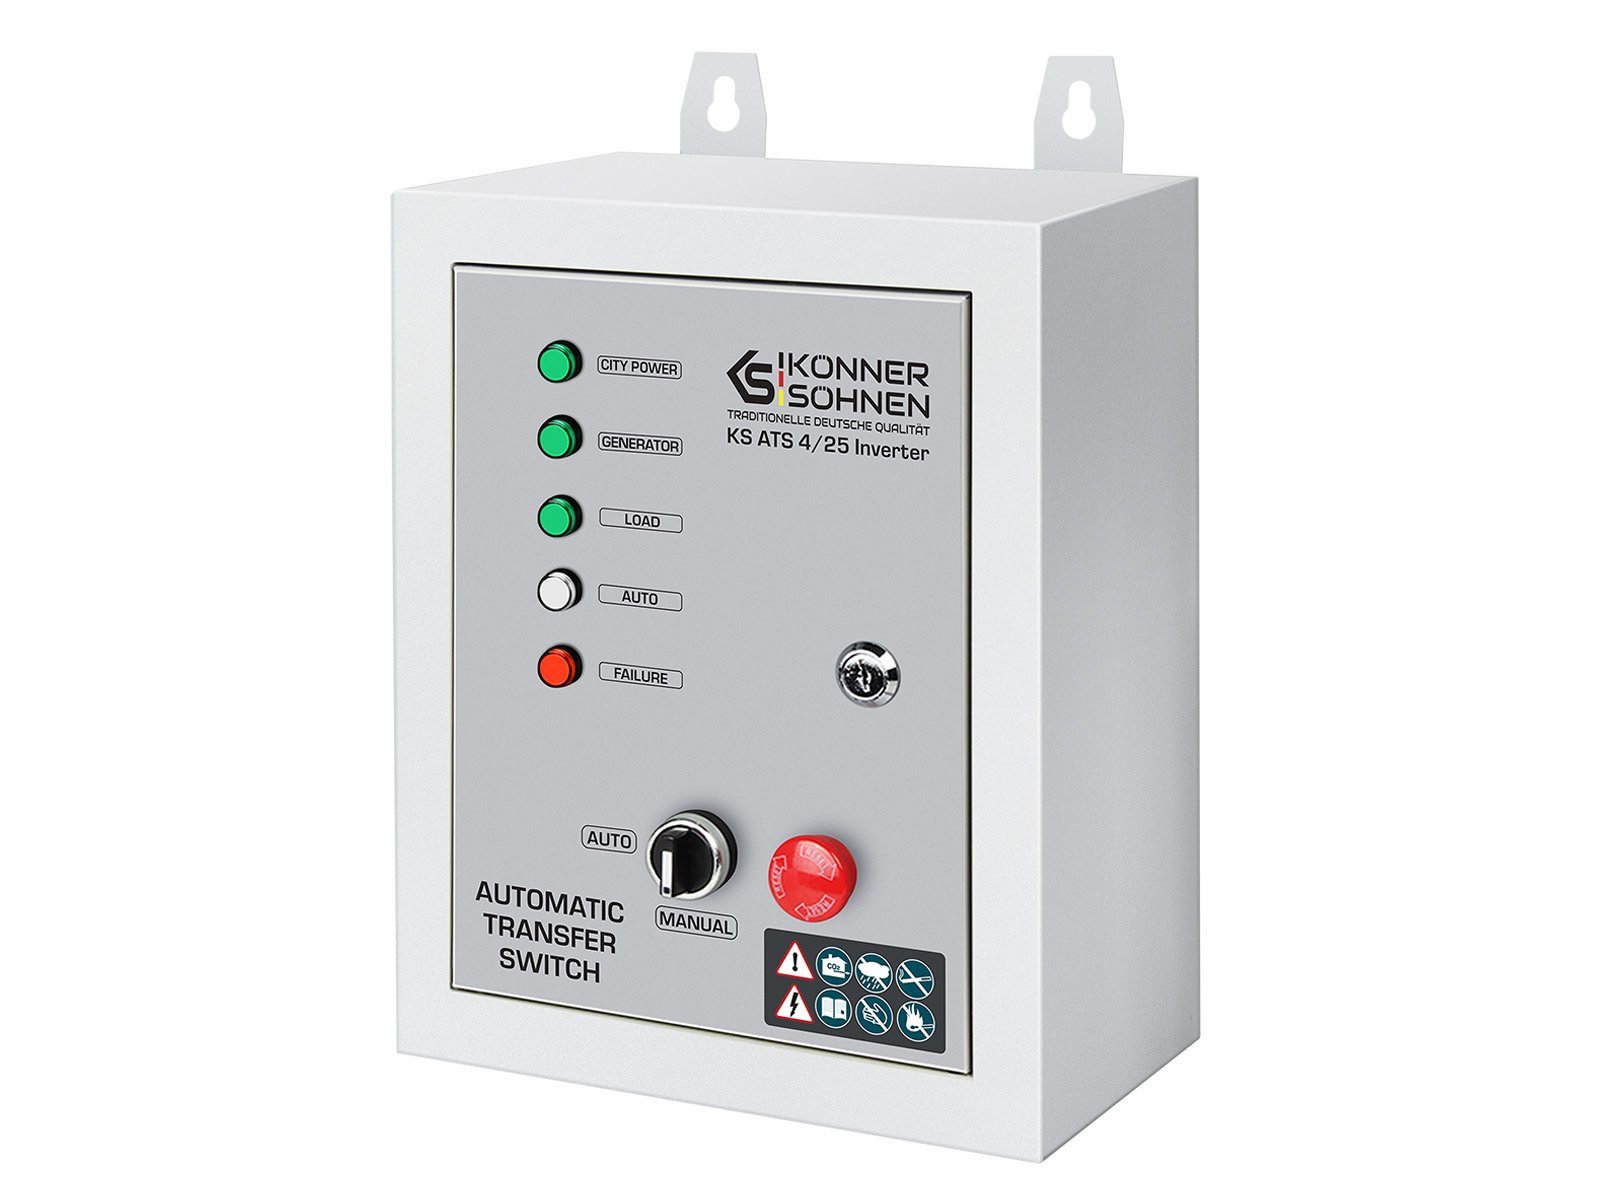 Könner & Söhnen Stromerzeuger KS ATS 4/25 Inverter, (Automatisches Netzumschaltgerät, 1-tlg., (230 und 400 V), startet / stoppt den Generator und schaltet automatisch um